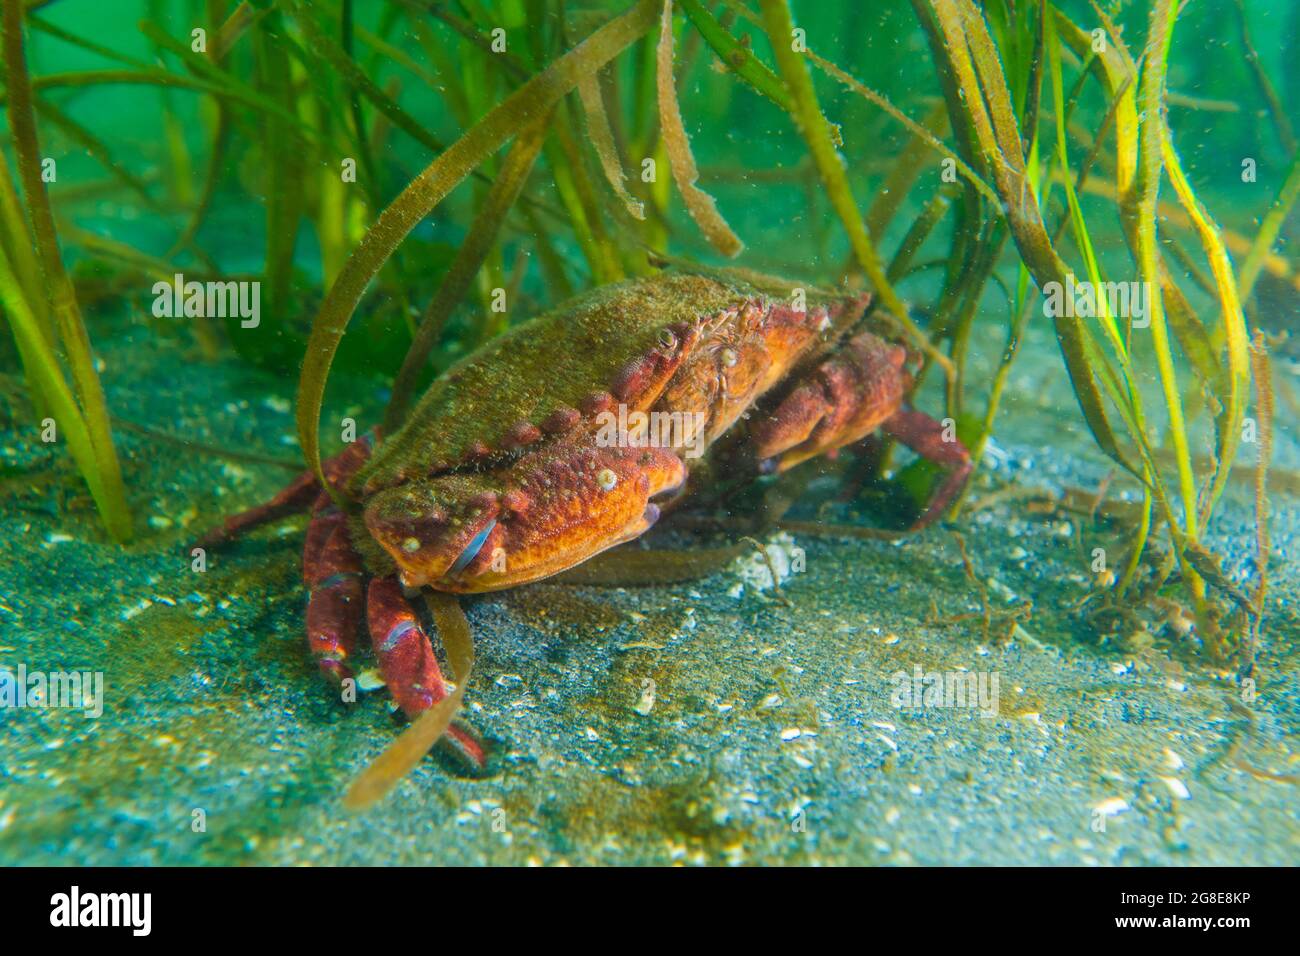 Crabe dormeur adulte avec une zone d'herbe à l'arrière-plan. Banque D'Images